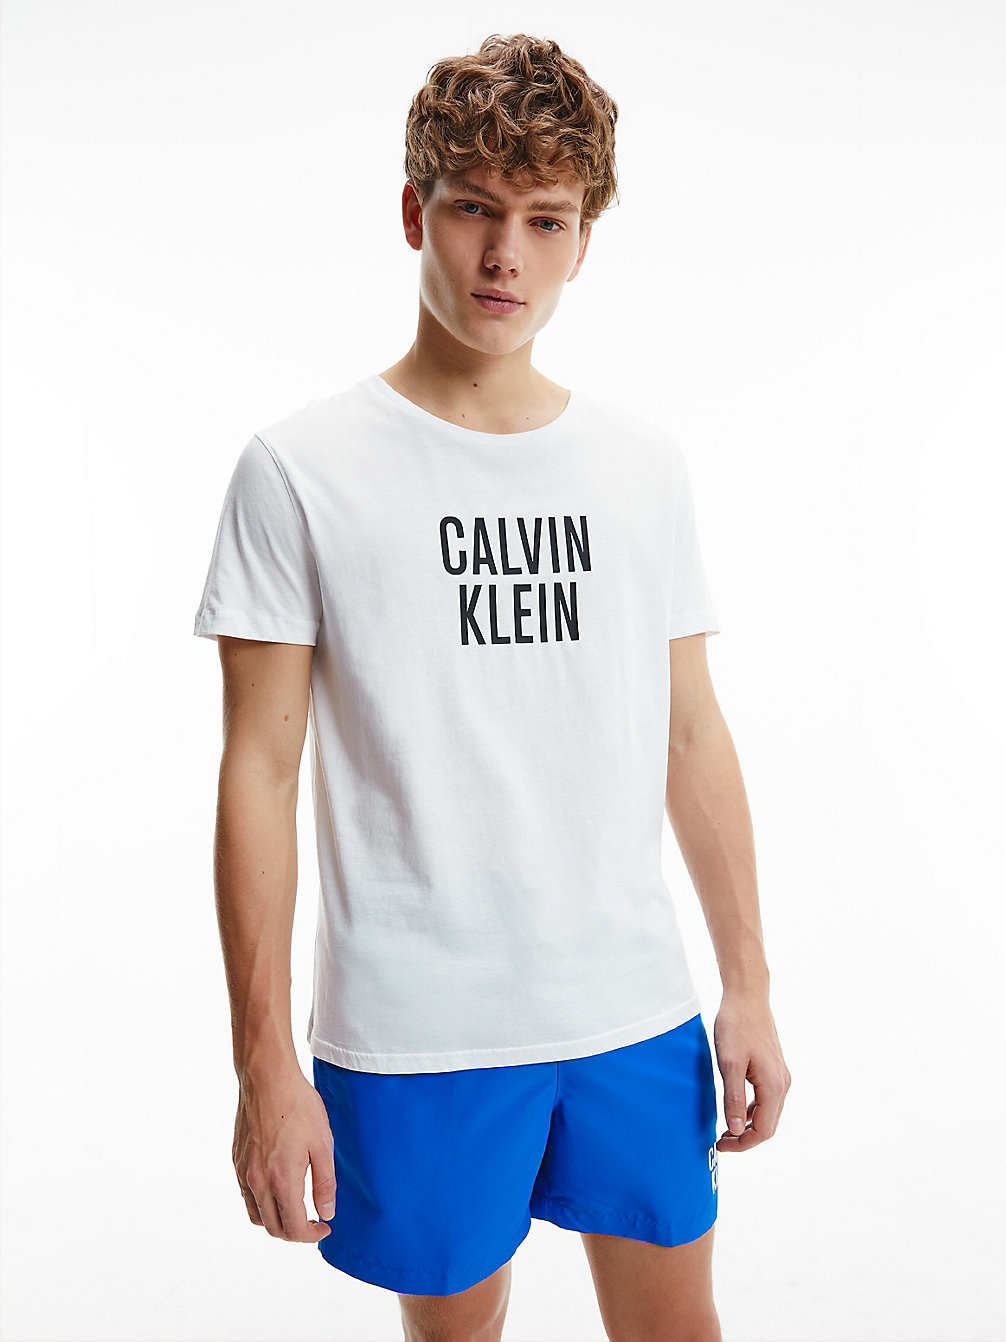 PVH CLASSIC WHITE > T-Shirt Plażowy Z Bawełny Organicznej - Intense Power > undefined Mężczyźni - Calvin Klein